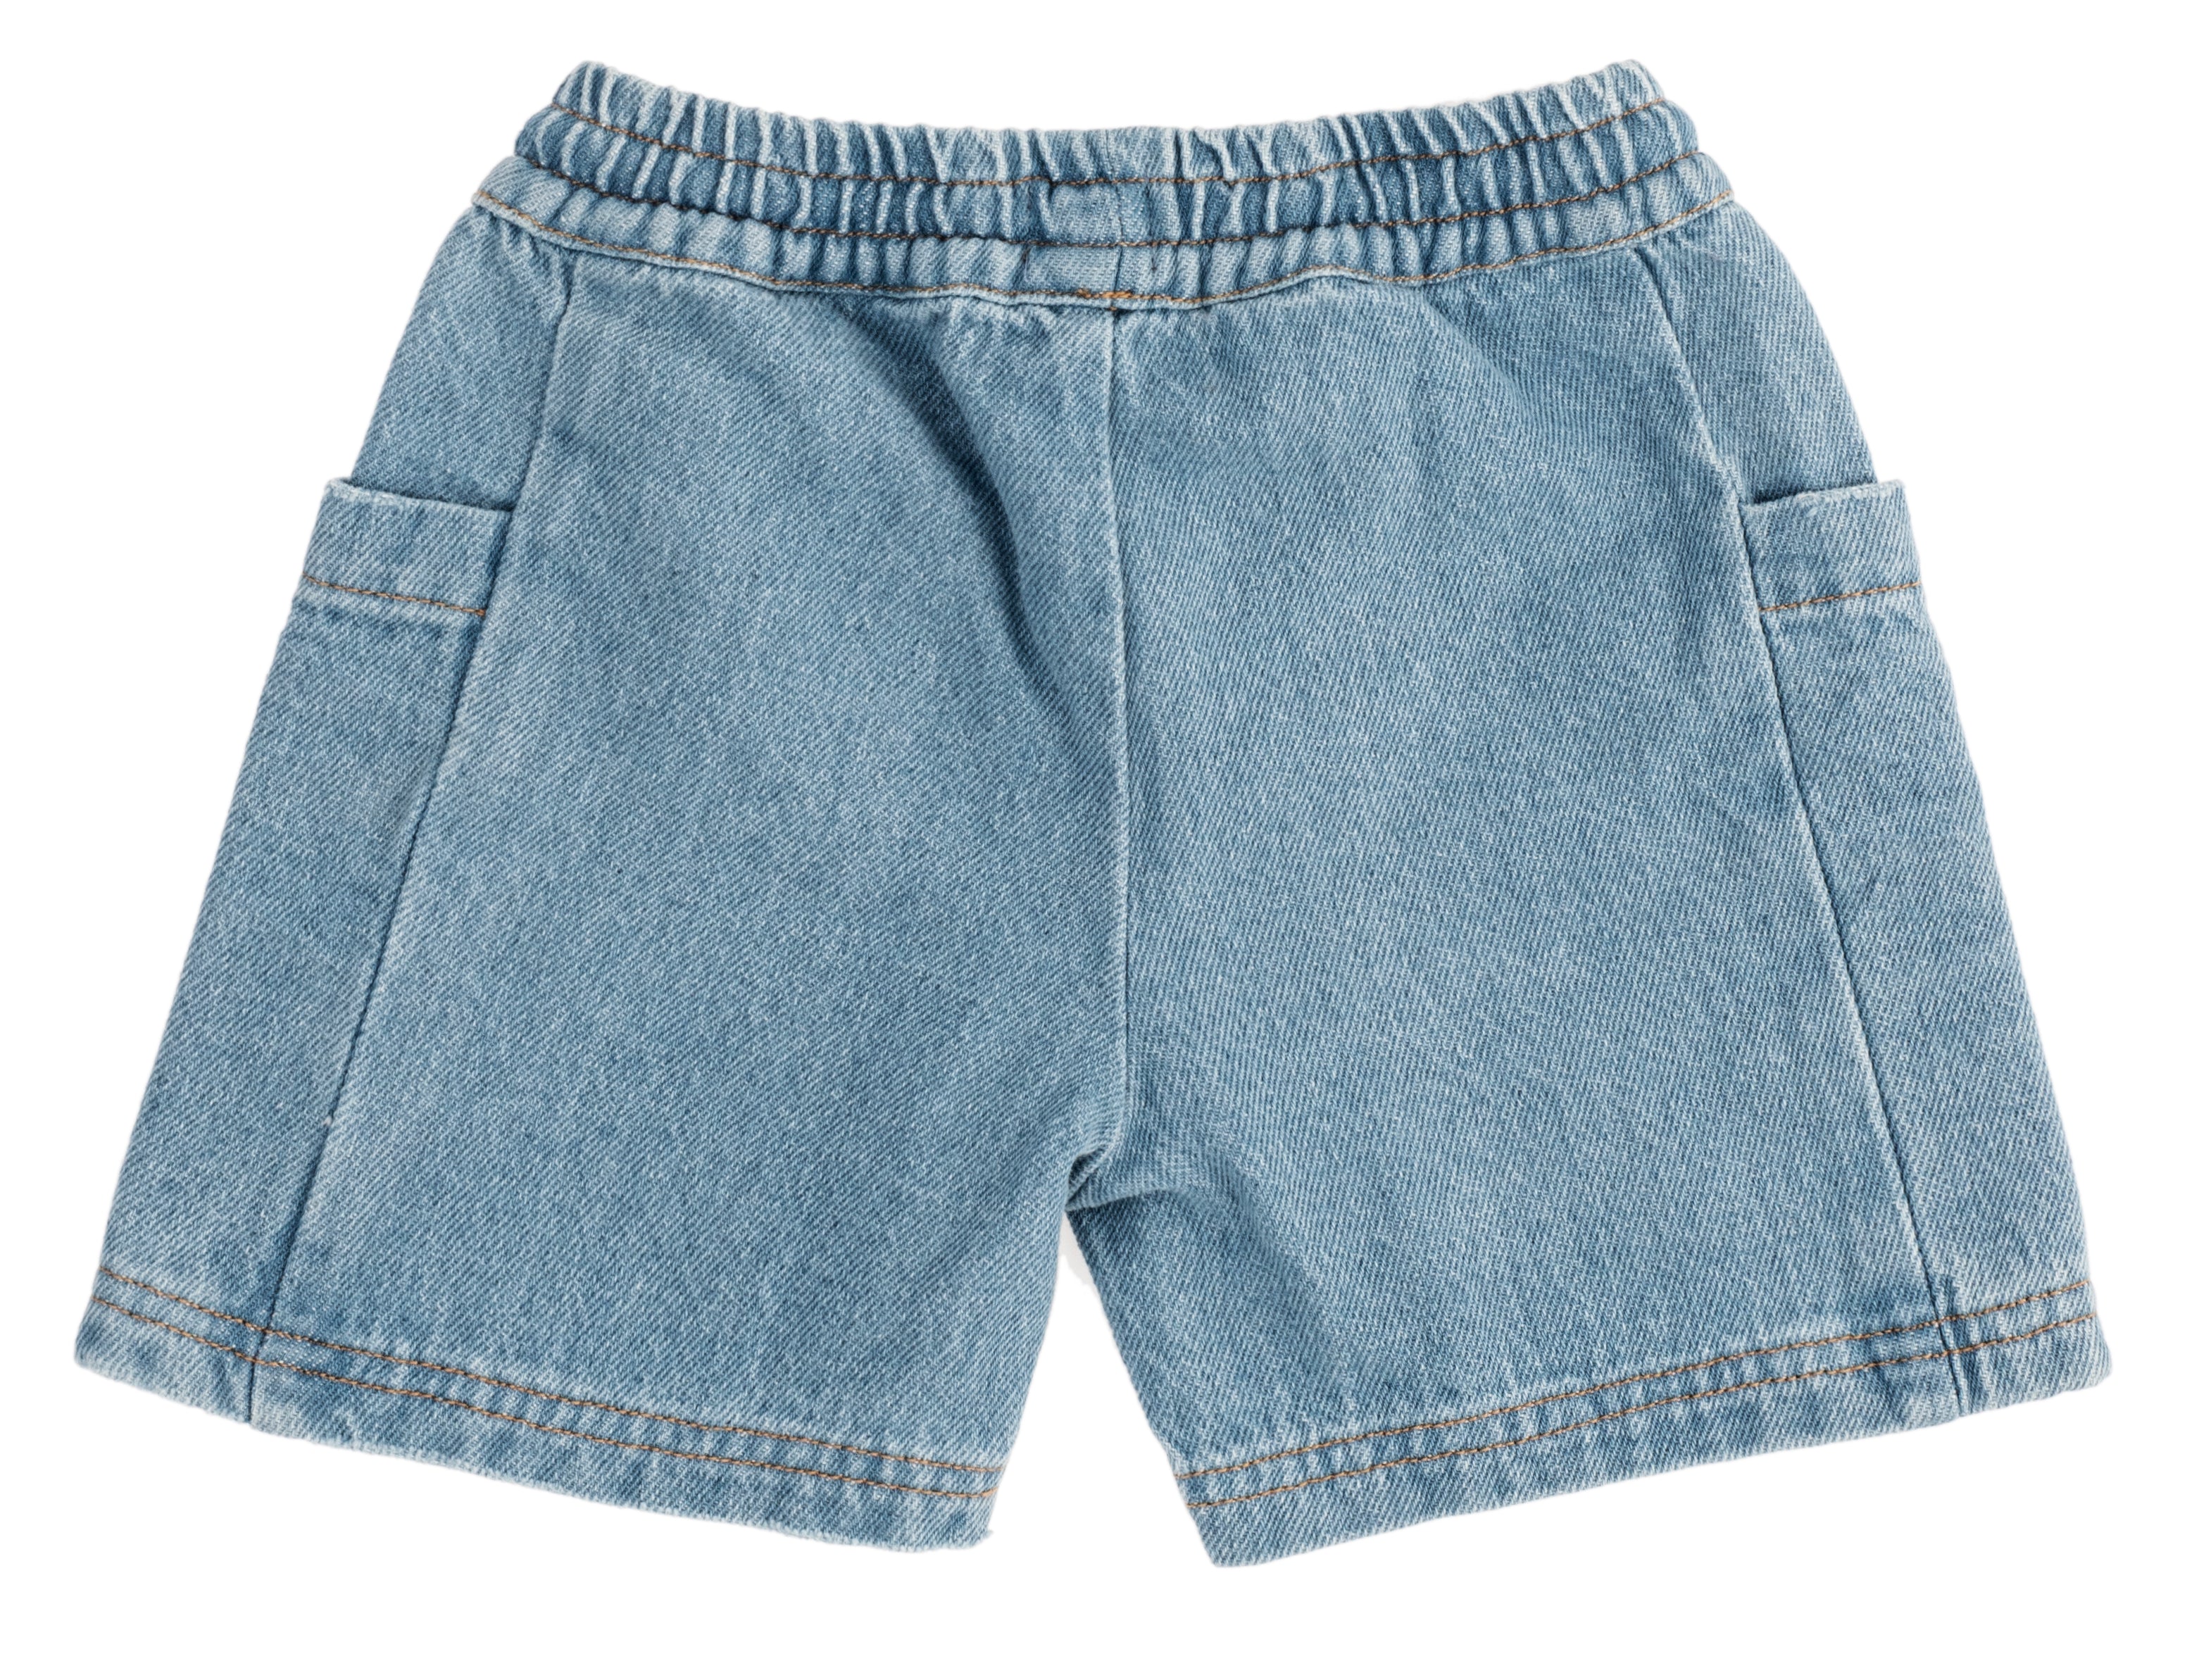 Tocoto Vintage Blue Jean Shorts - Blue